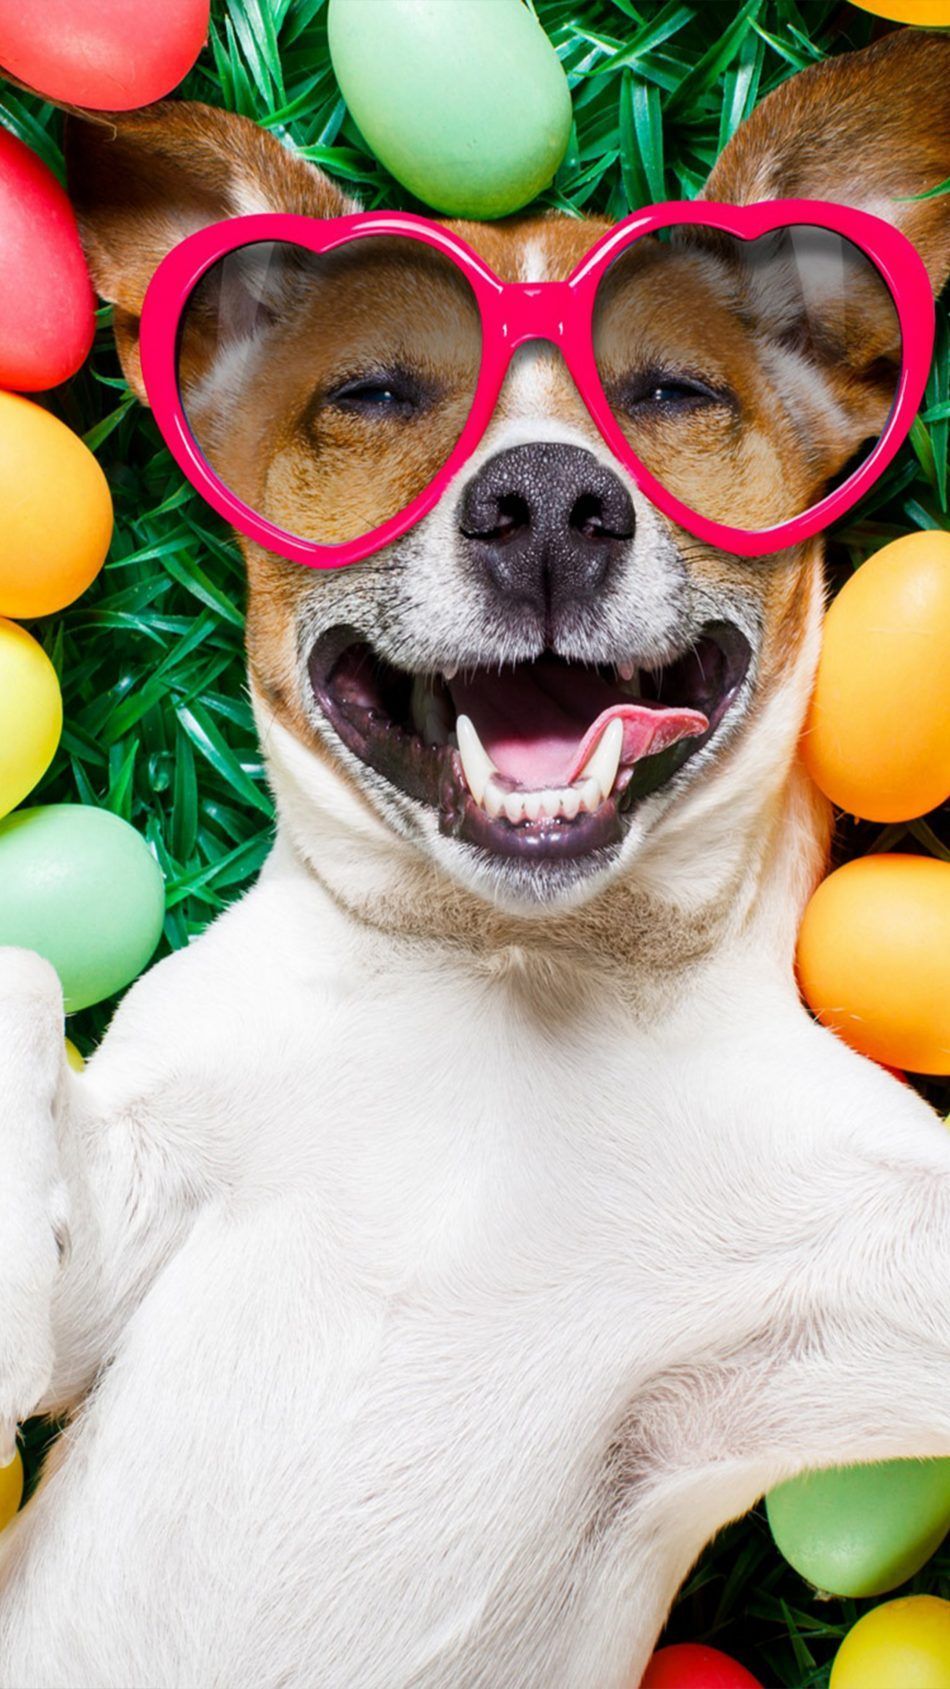 Happy Dog With Easter Eggs 4K Ultra HD Mobile Wallpaper. Perros felices, Perros sonrientes, Retratos de perros